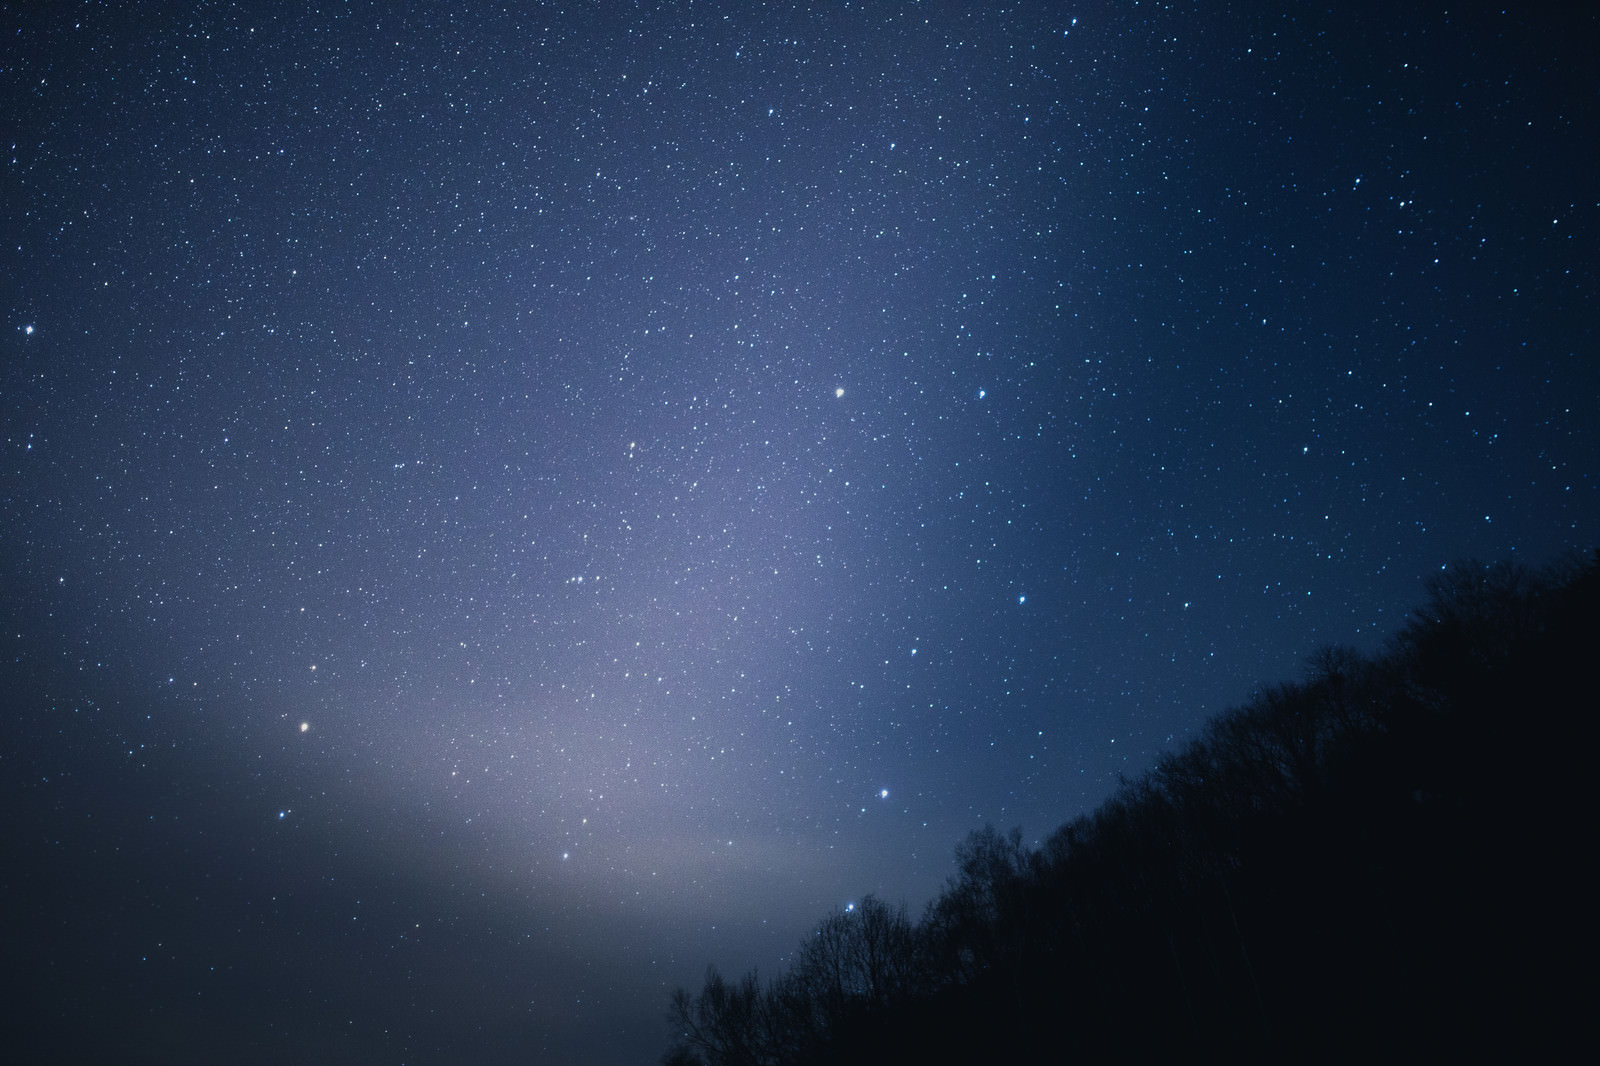 星がキレイな北アルプスの夜空 無料の写真素材はフリー素材のぱくたそ